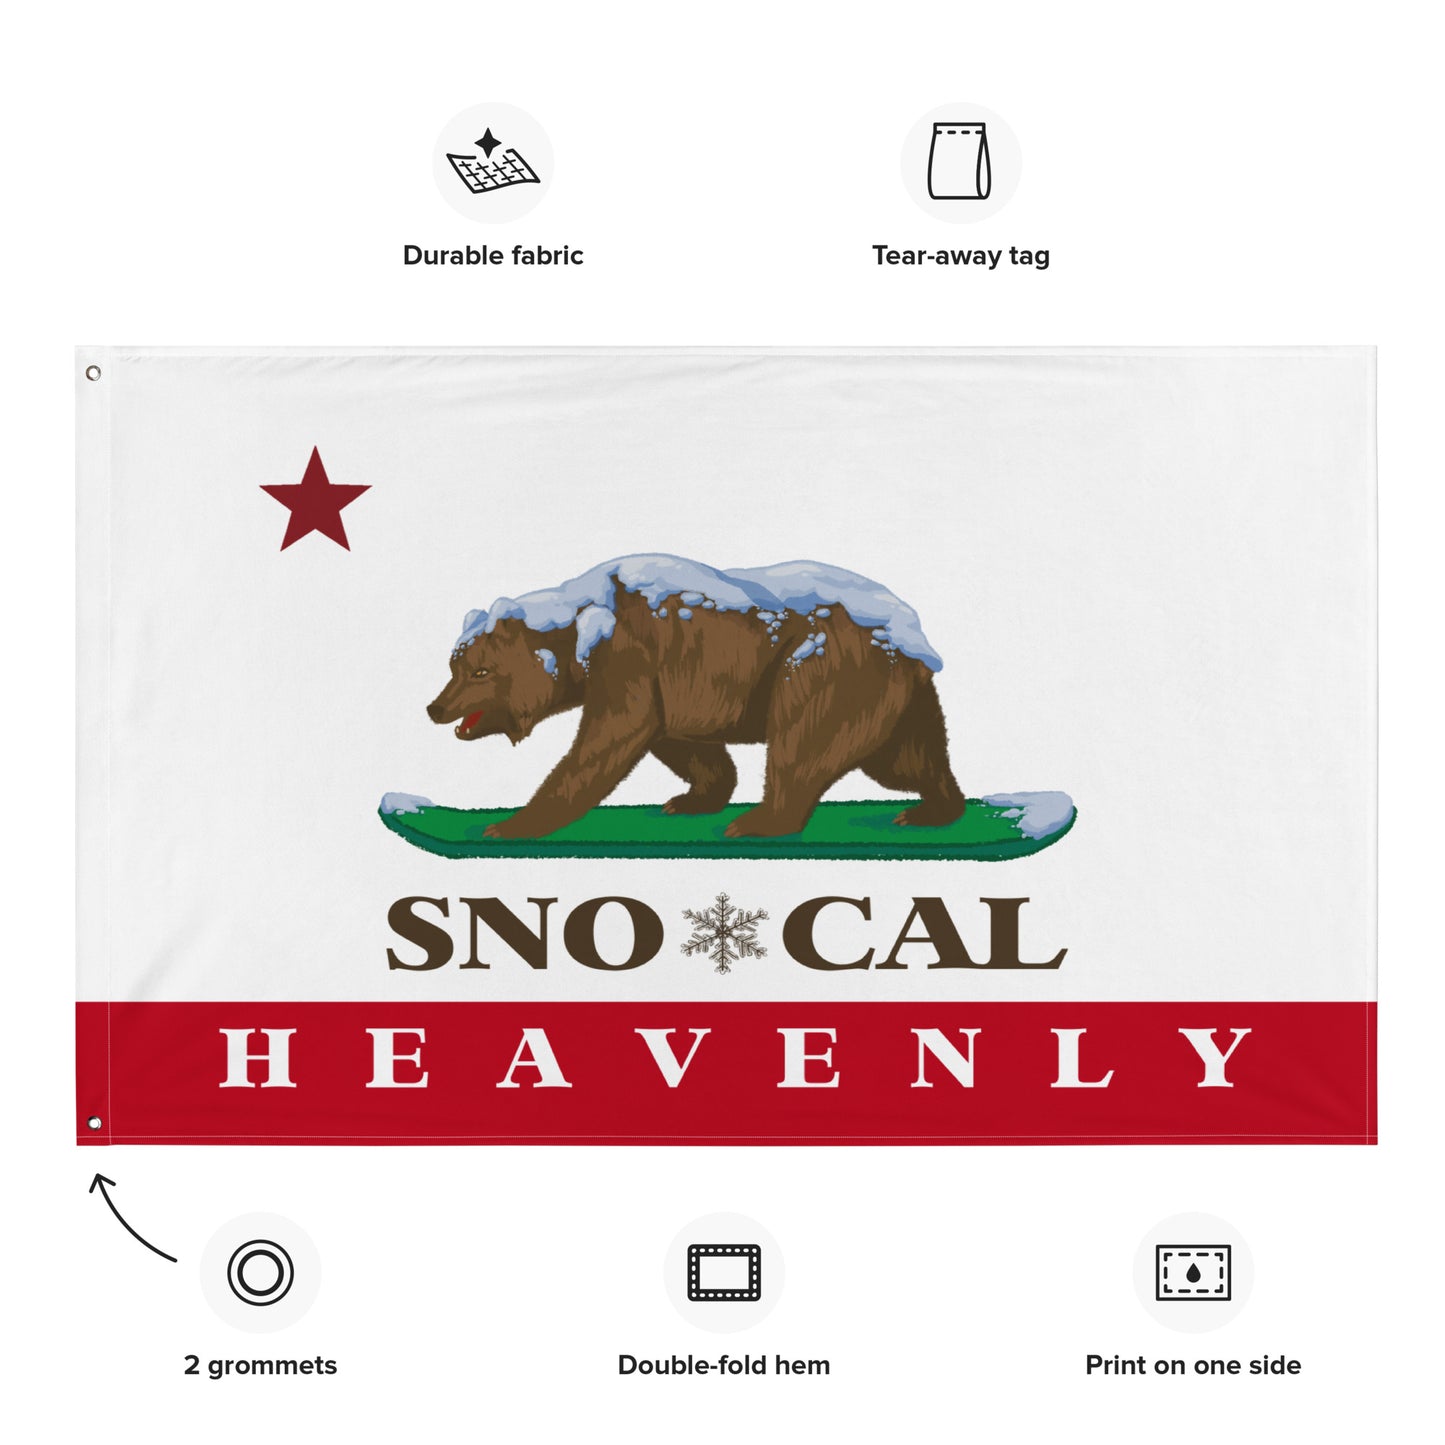 Heavenly Sno*Cal Flag